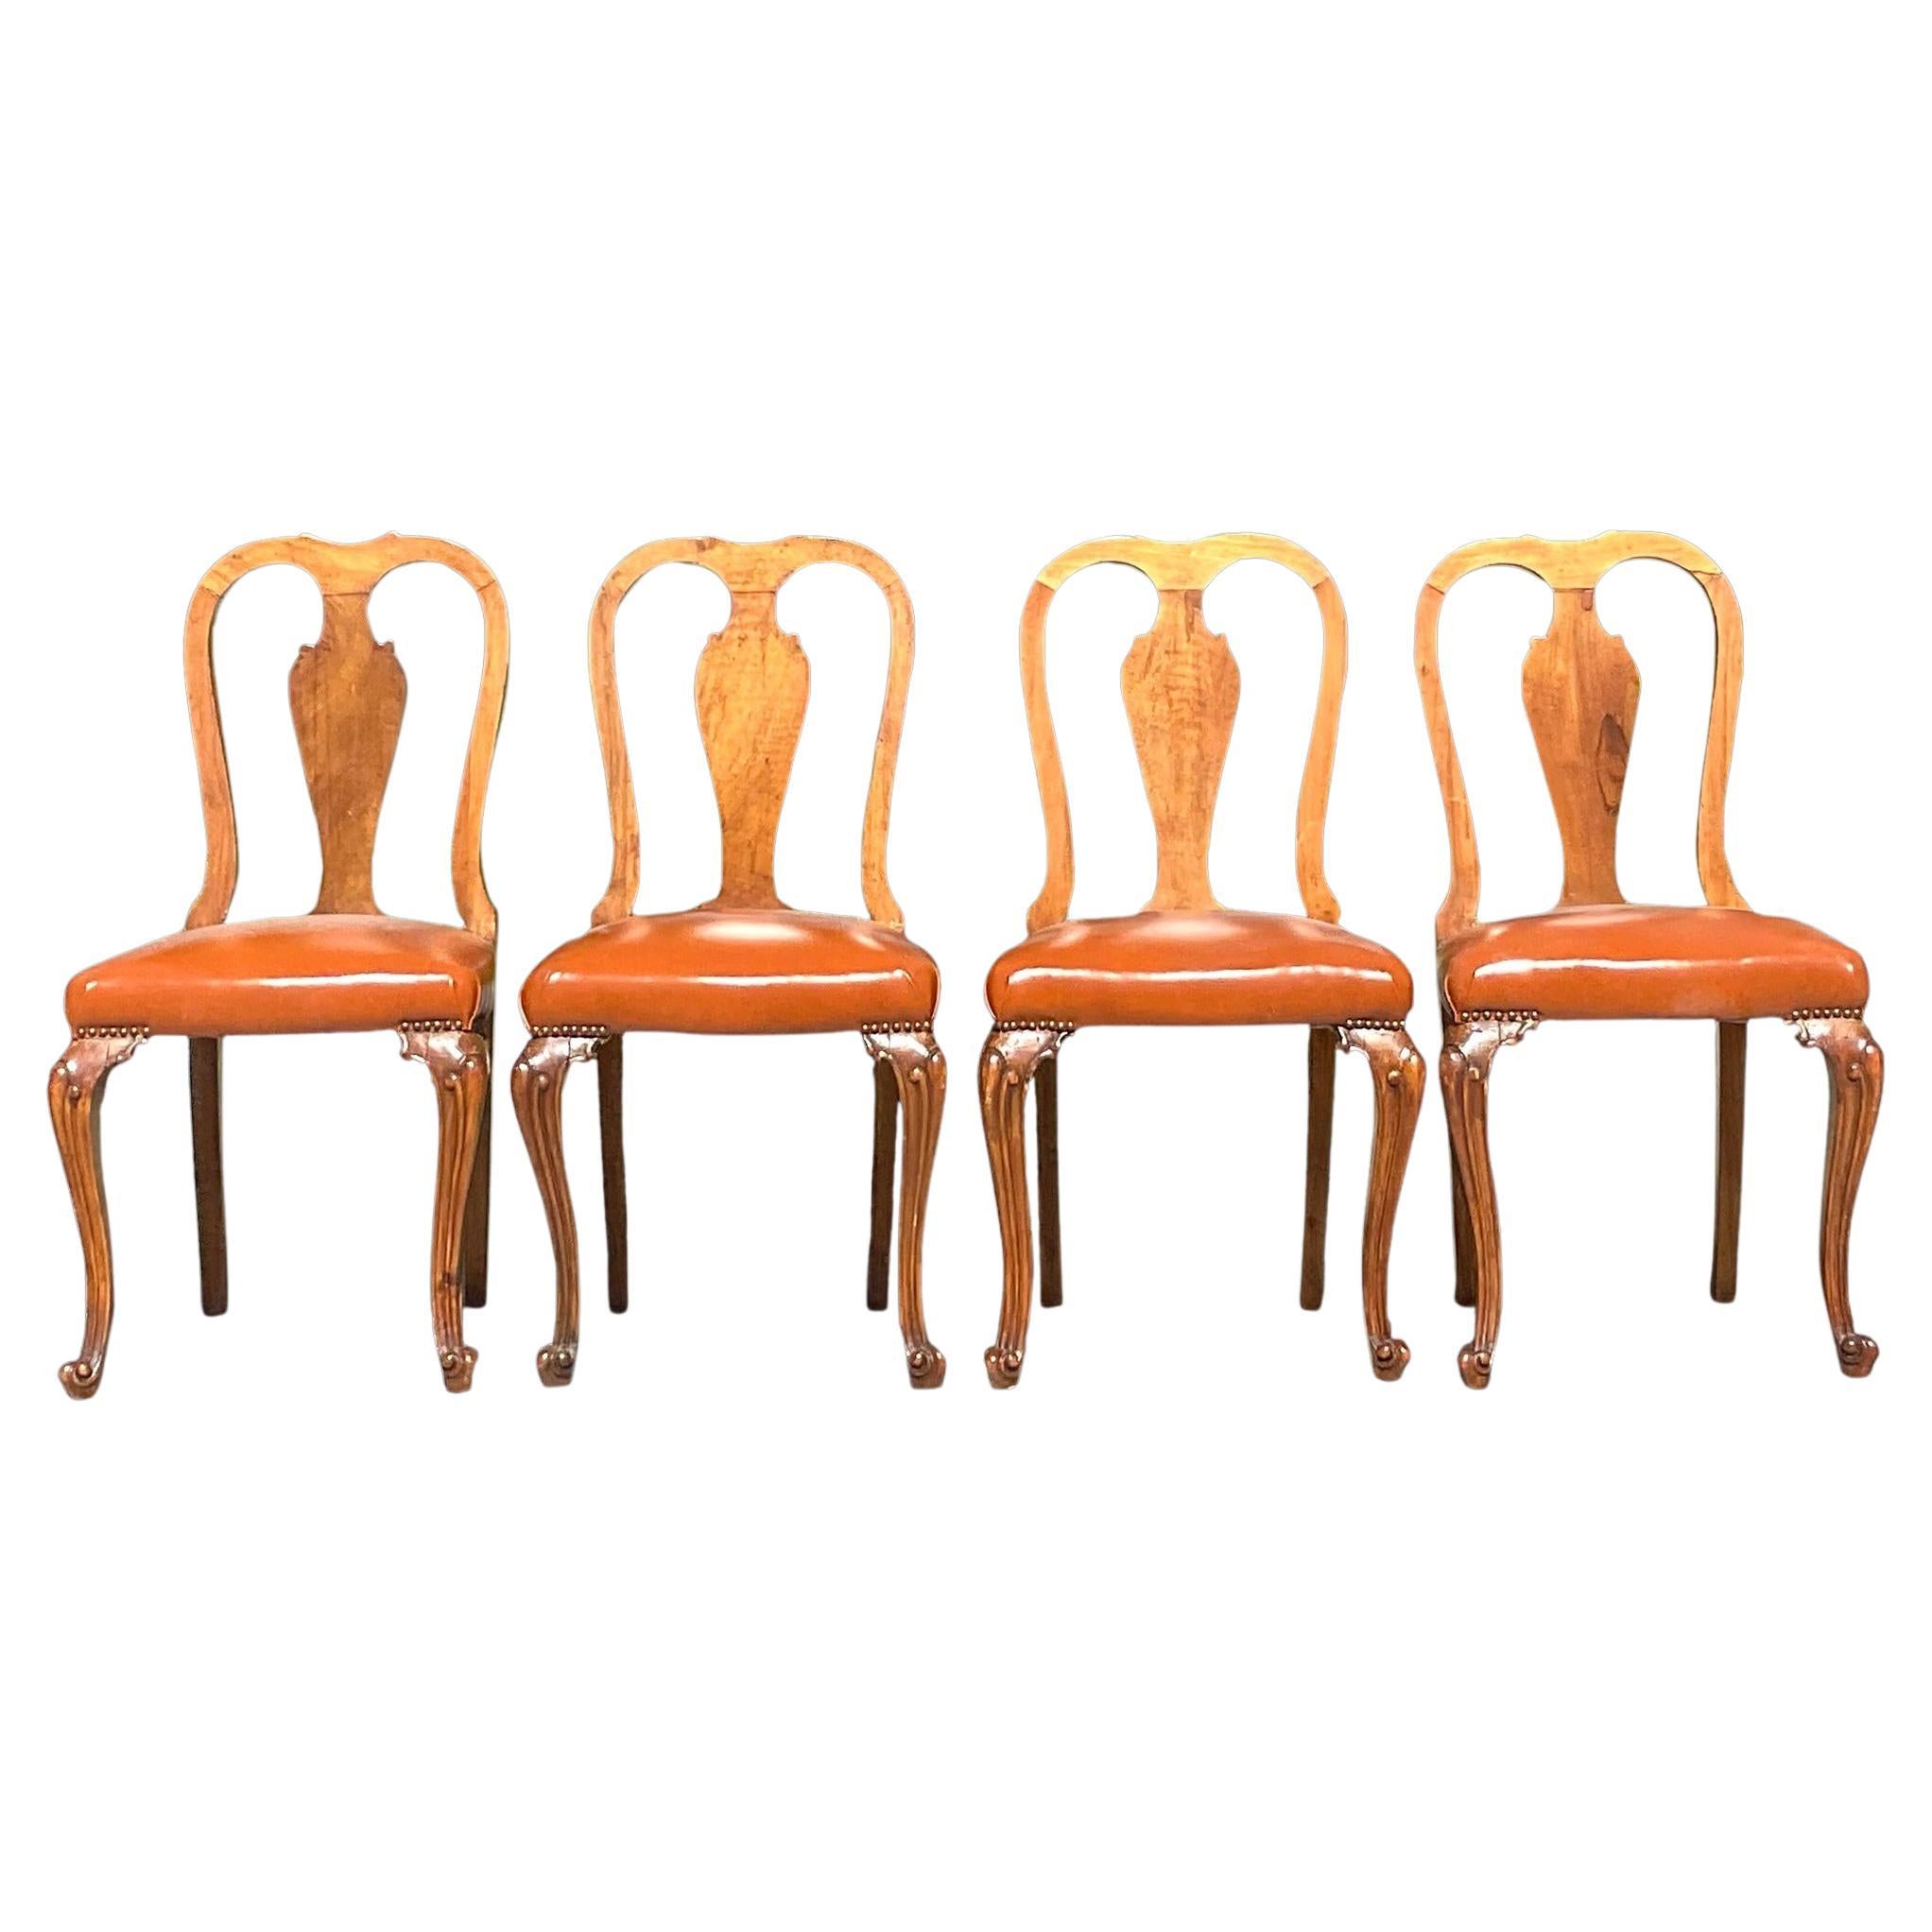 Vintage Regency Burl Wood Queen Anne Dining Chairs, Set of 4